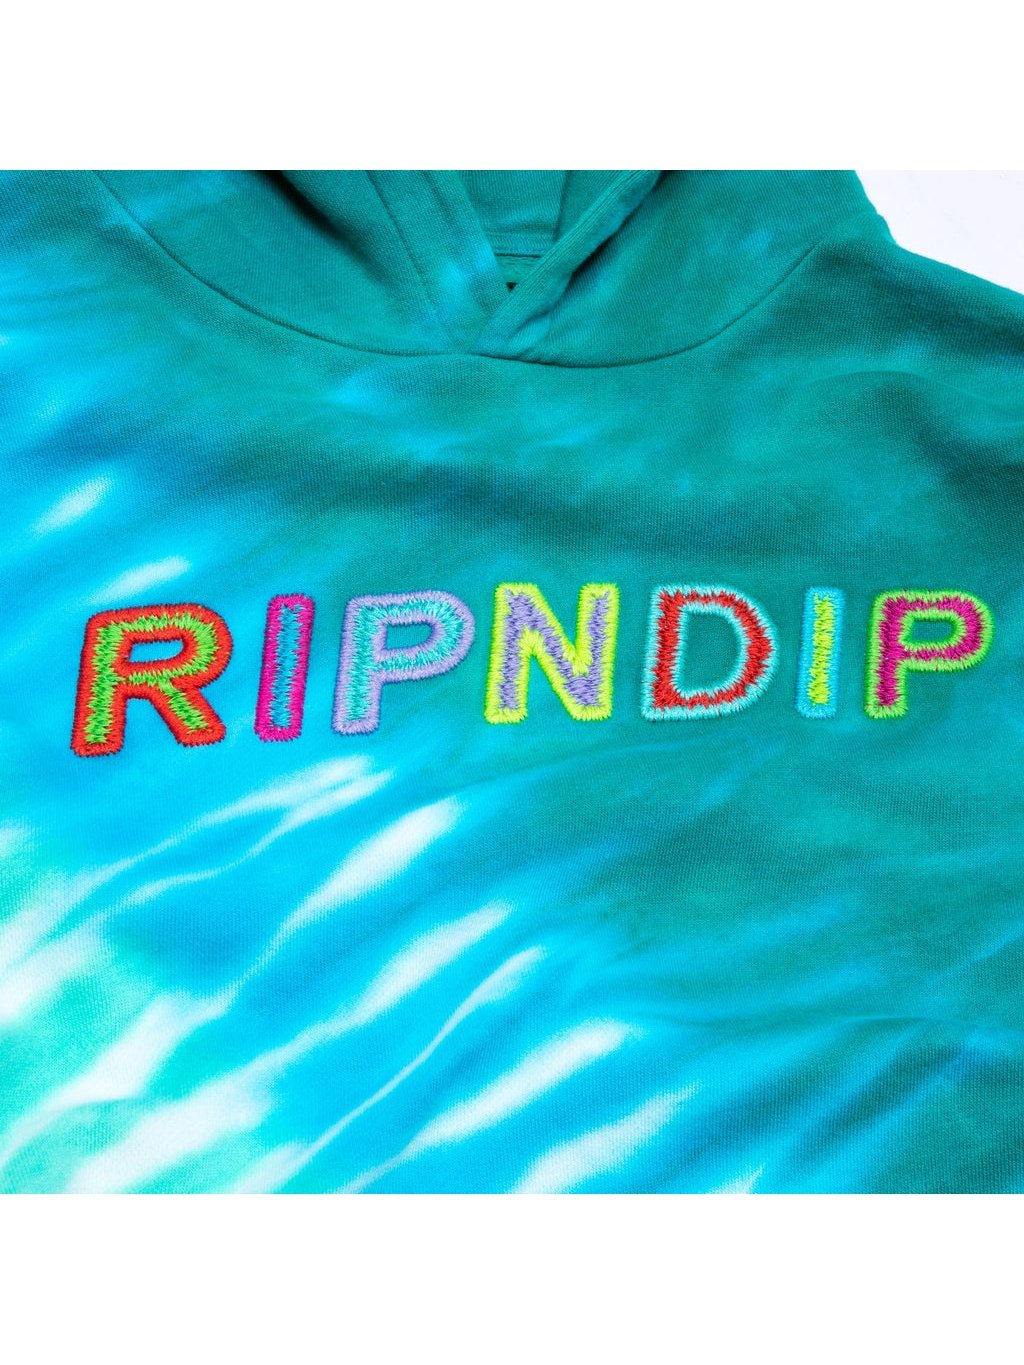 Ripndip Men's Prisma Hoodie Teal Rainbow Dye RND9034.